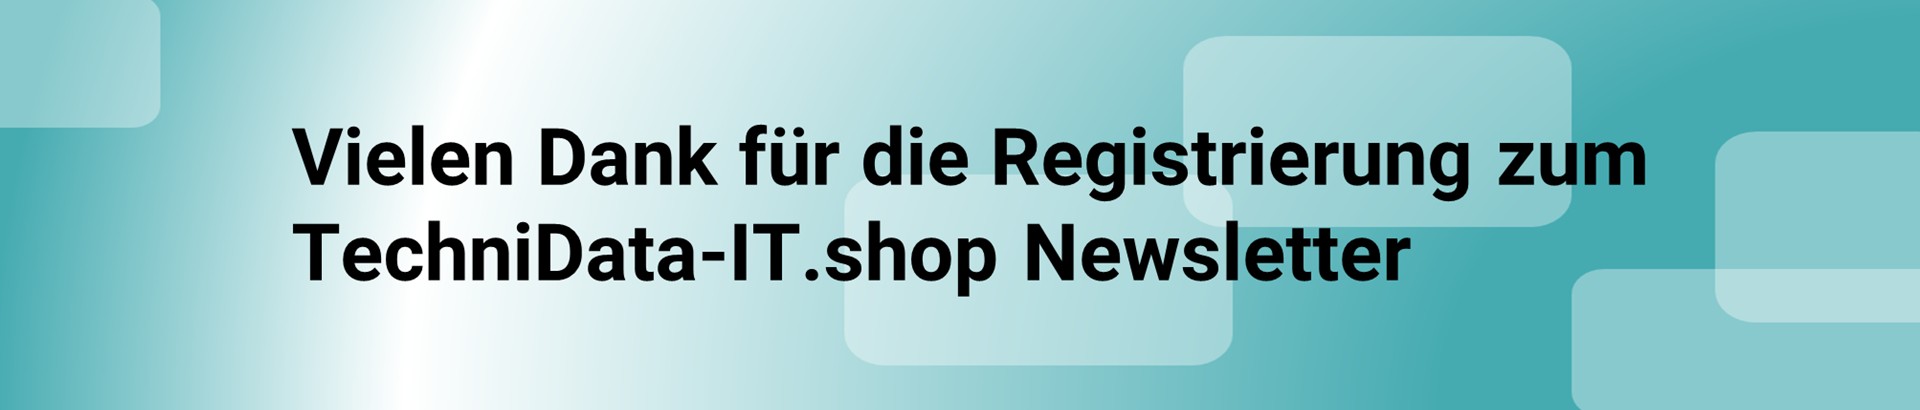 Vielen Dank für Ihre Registrierung zum TechniData-IT.shop Newsletter